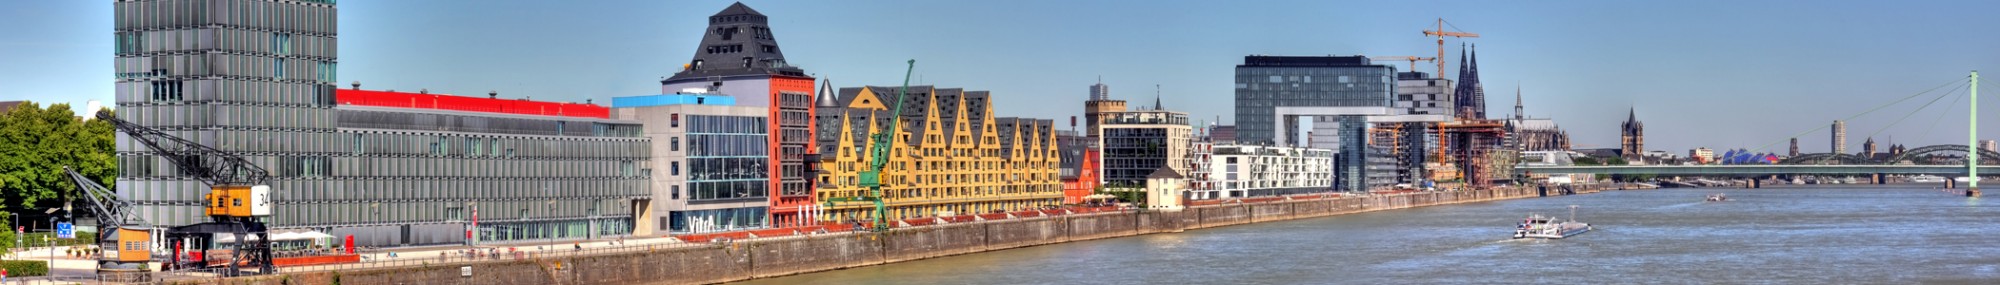 Cologne Rheinauhafen banner